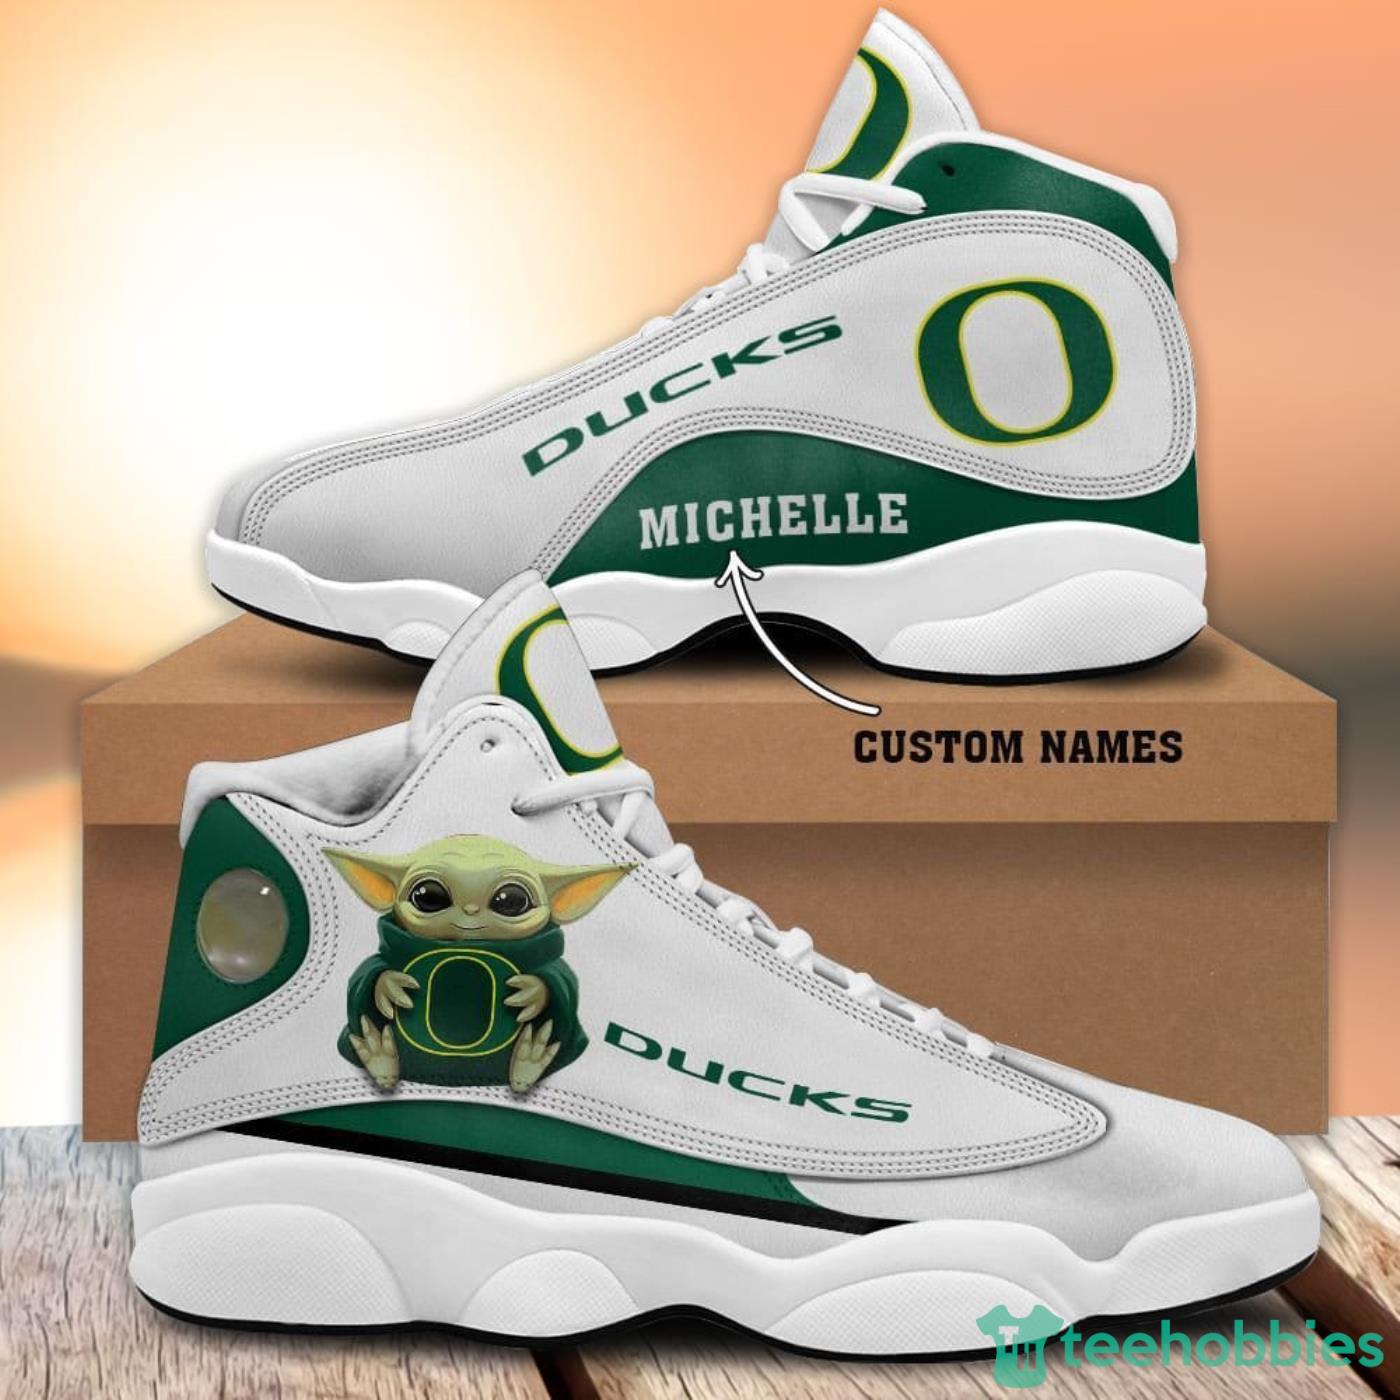 Oregon Ducks Fans Custom Name Air Jordan 13 Sneaker Shoes